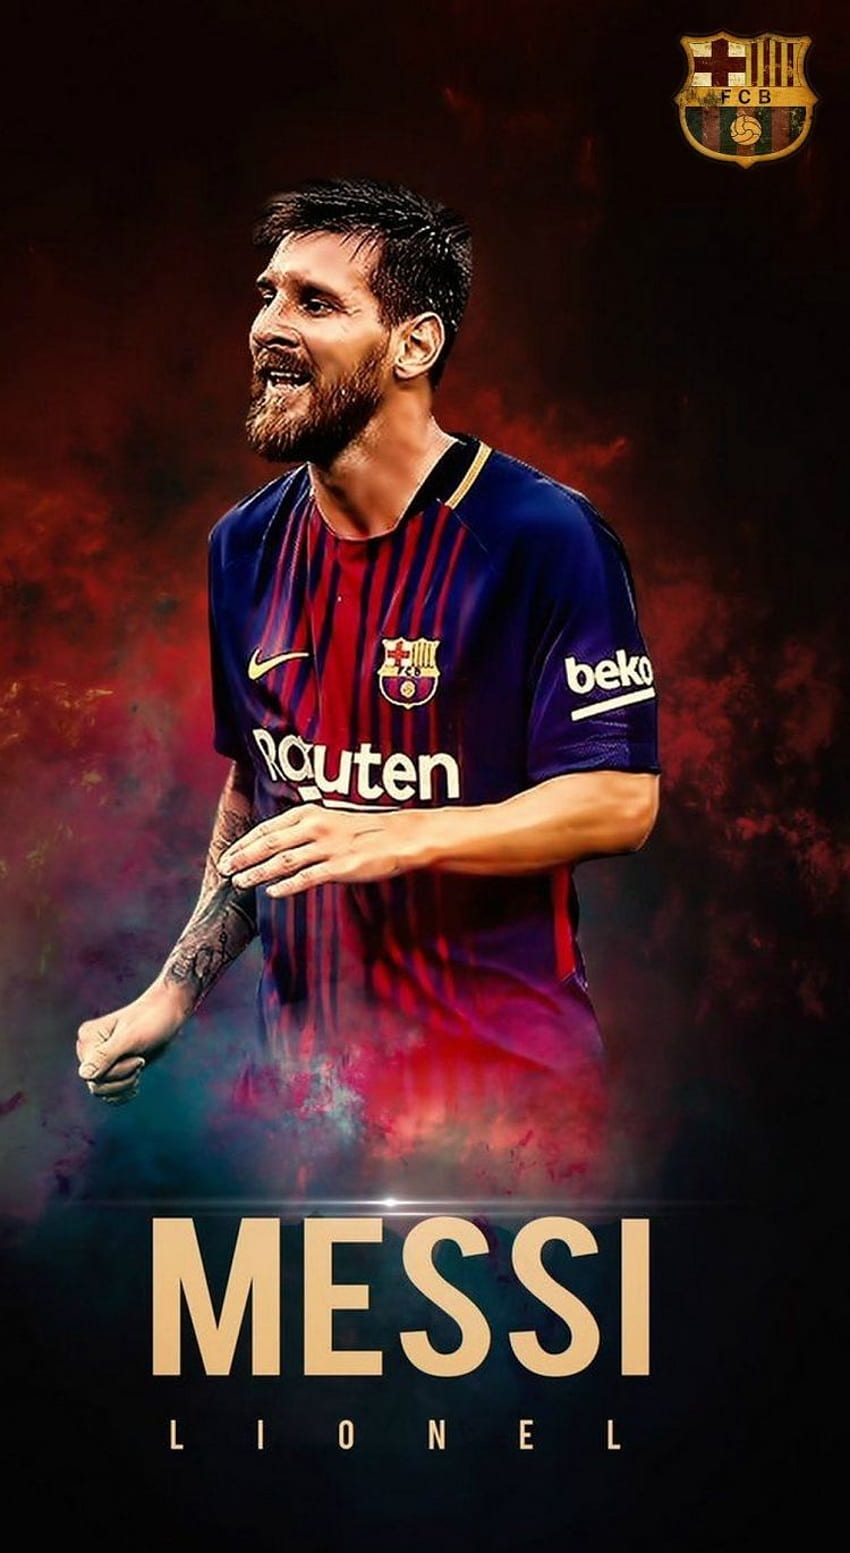 FCB 2019 - một thời điểm quan trọng trong lịch sử của Barca. Hãy cùng ngắm nhìn hình ảnh móng vuốt của các cầu thủ huyền thoại cùng nhau chinh phục Europa.